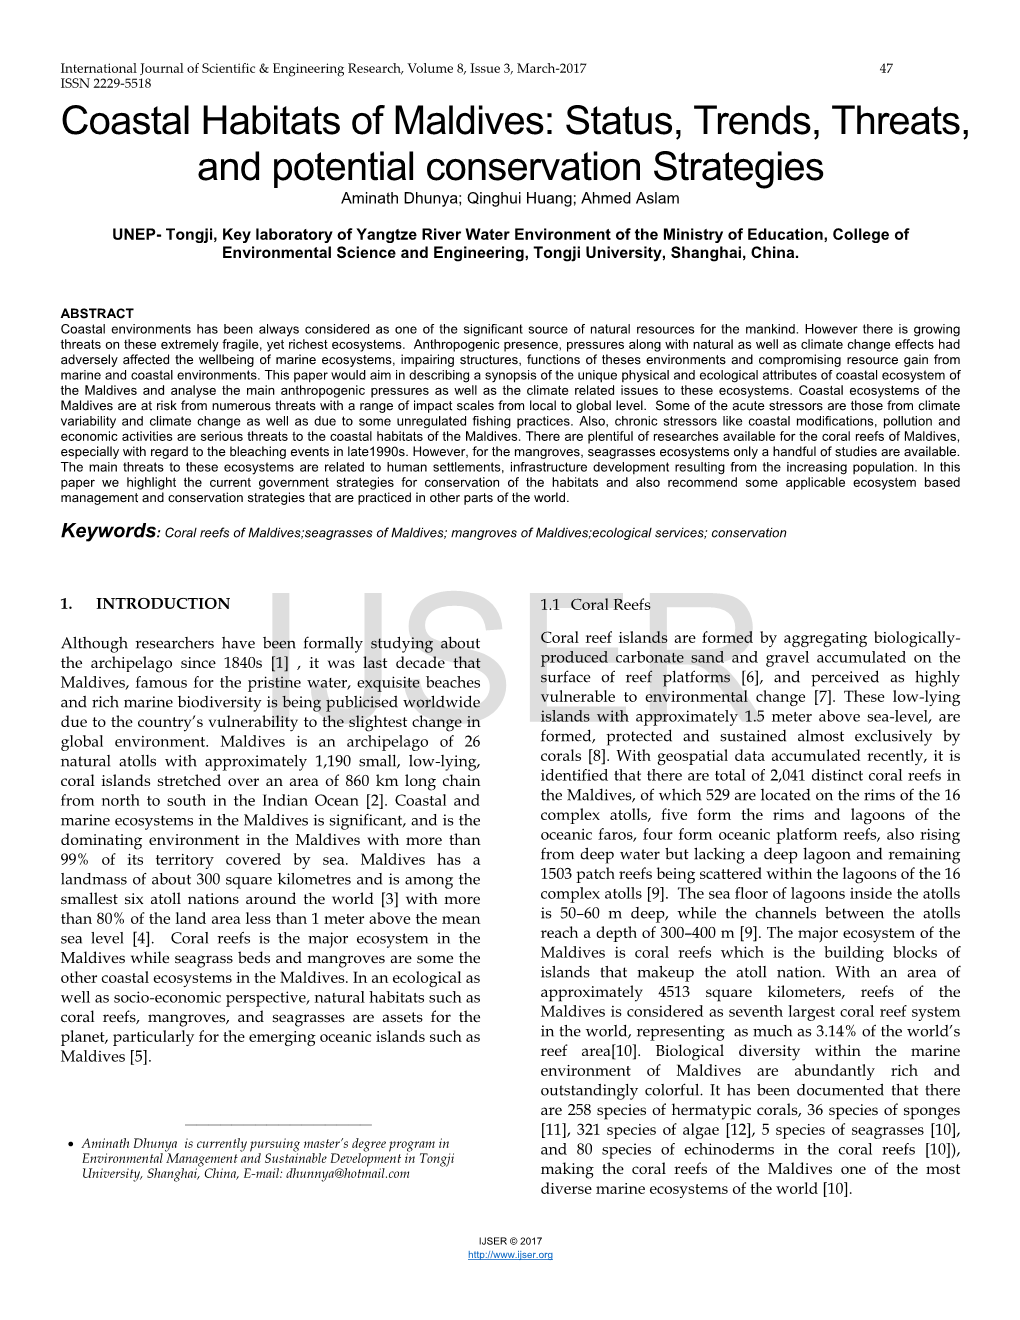 Coastal Habitats of Maldives: Status, Trends, Threats, and Potential Conservation Strategies Aminath Dhunya; Qinghui Huang; Ahmed Aslam